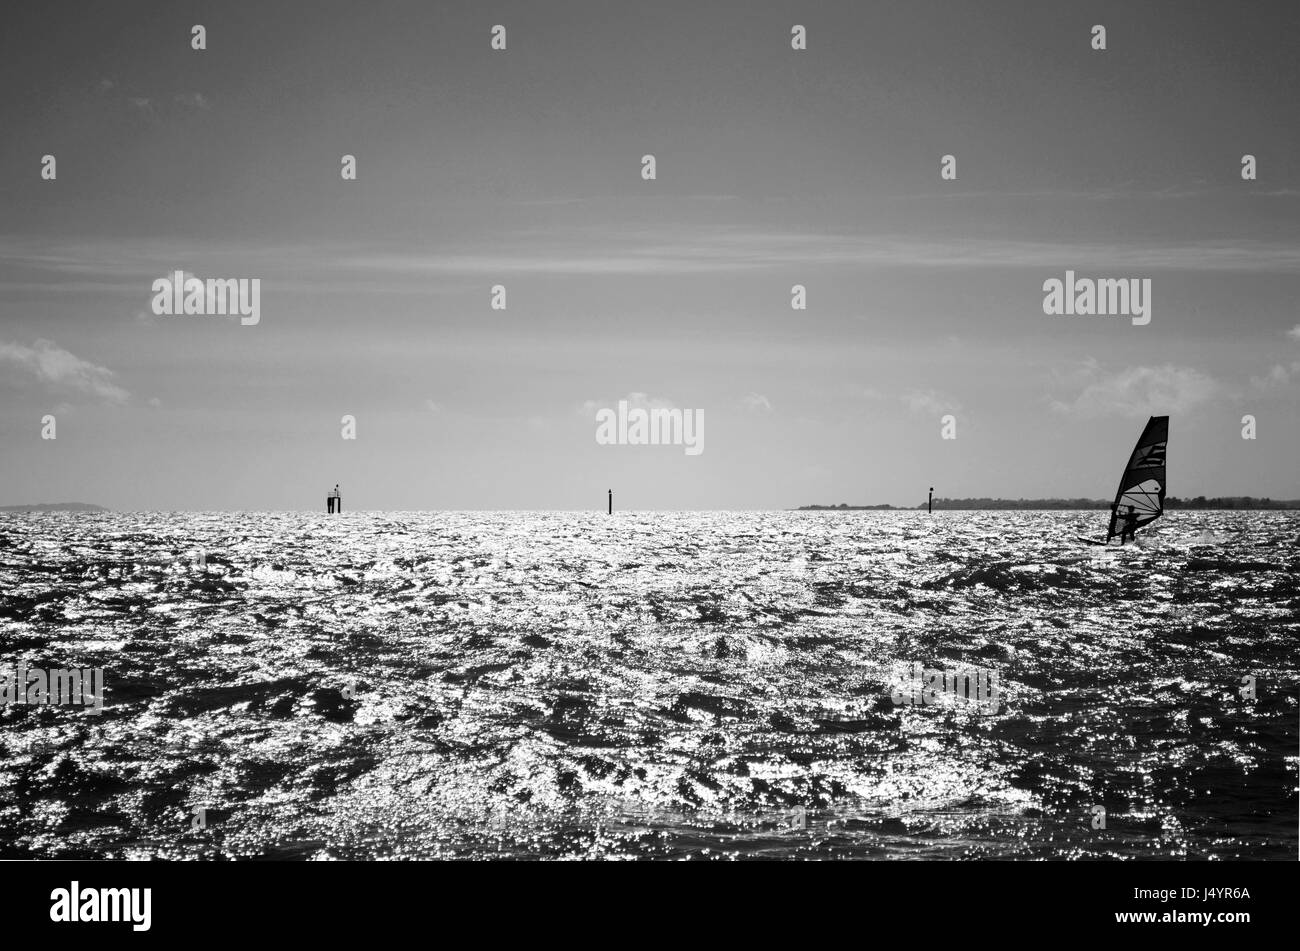 Monochrome d'un planche à voile dans le Solent au large de la plage de Lepe, Hampshire, Royaume-Uni Banque D'Images